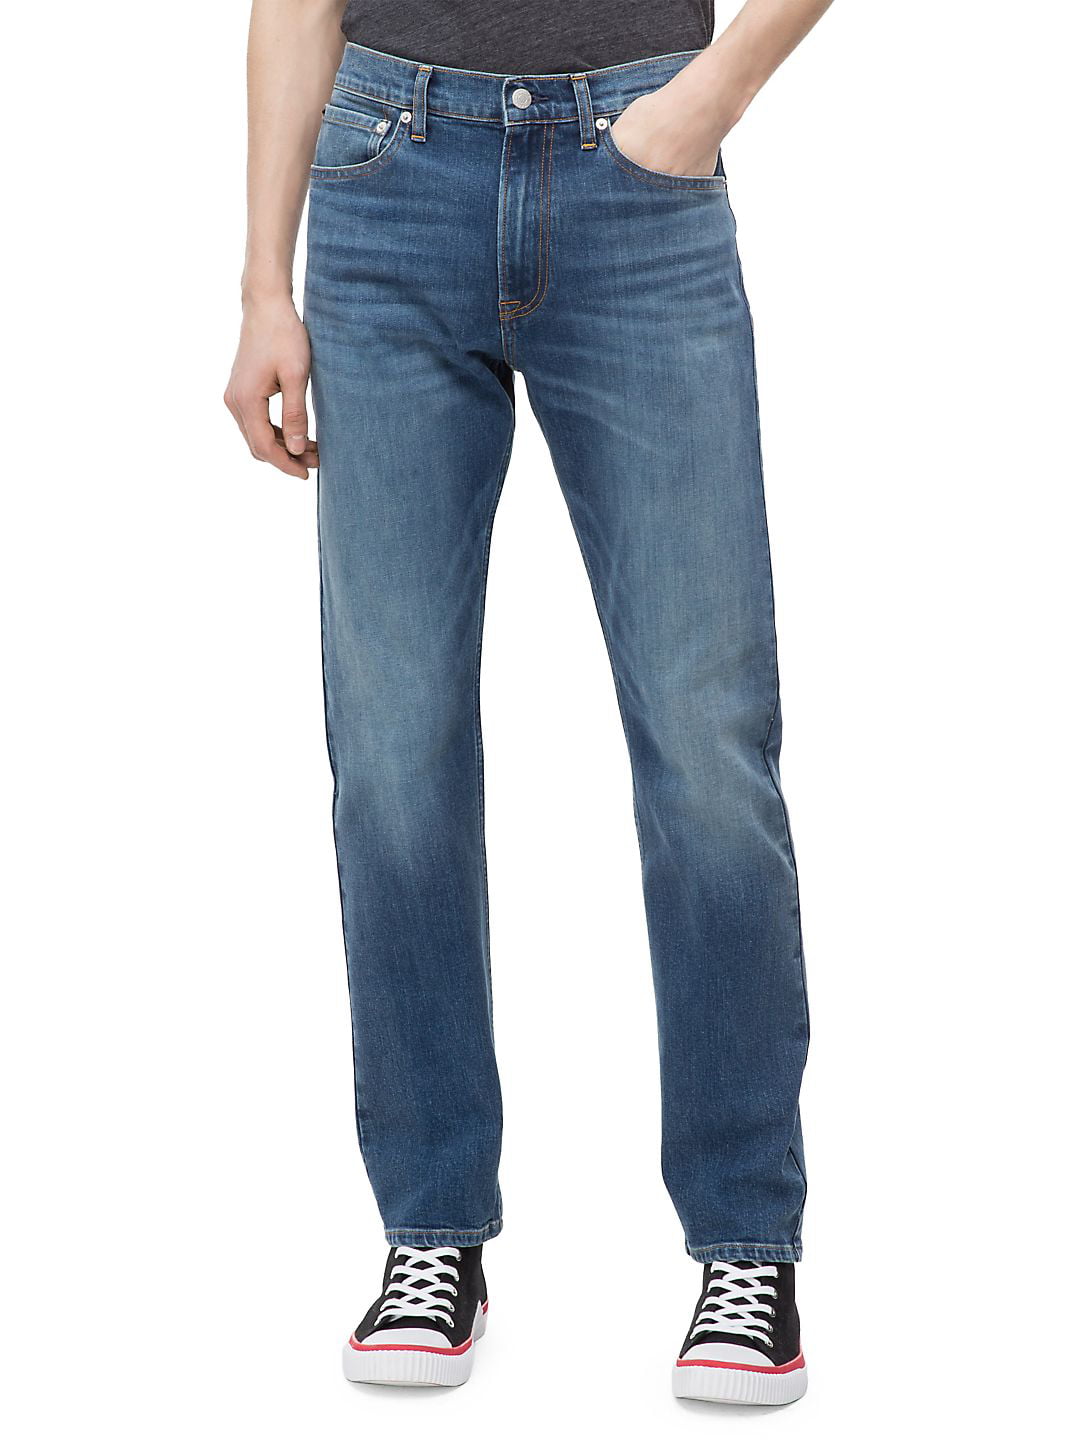 CKJ 035 Straight-Fit Jeans 